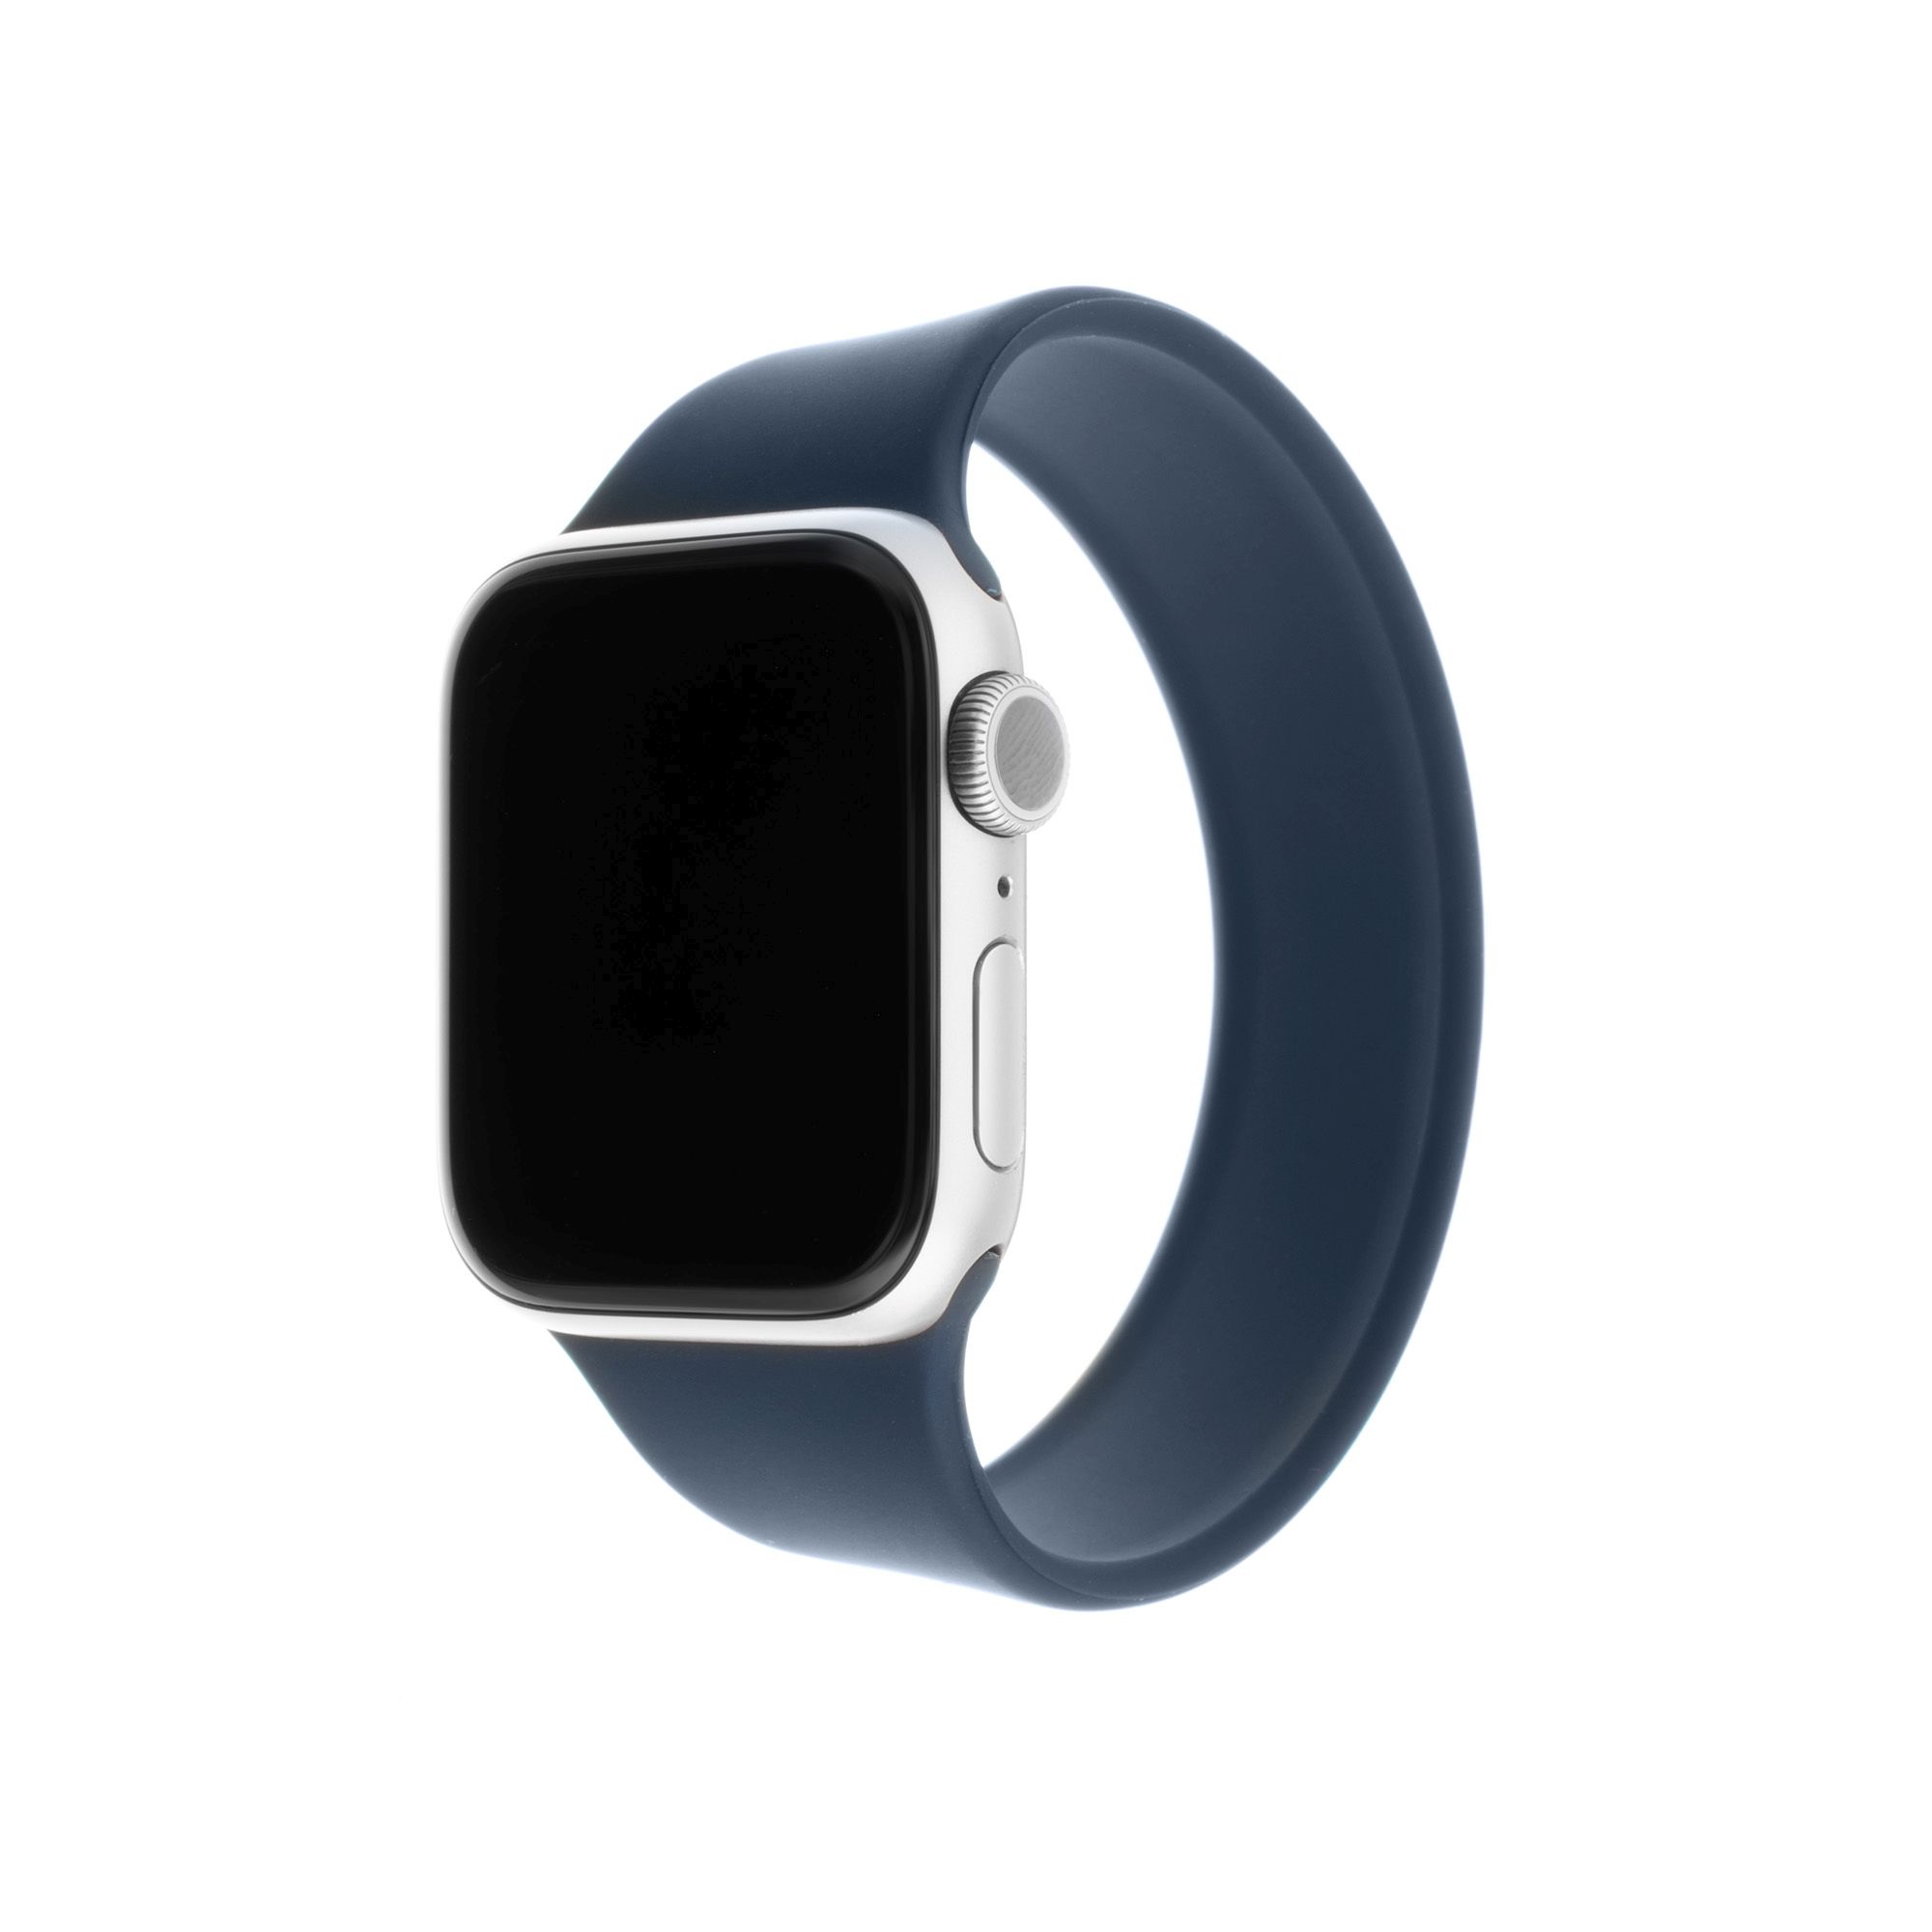 Elastický silikonový řemínek FIXED Silicone Strap pro Apple Watch 38/40/41mm, velikost XL, modrý - rozbalené / použité